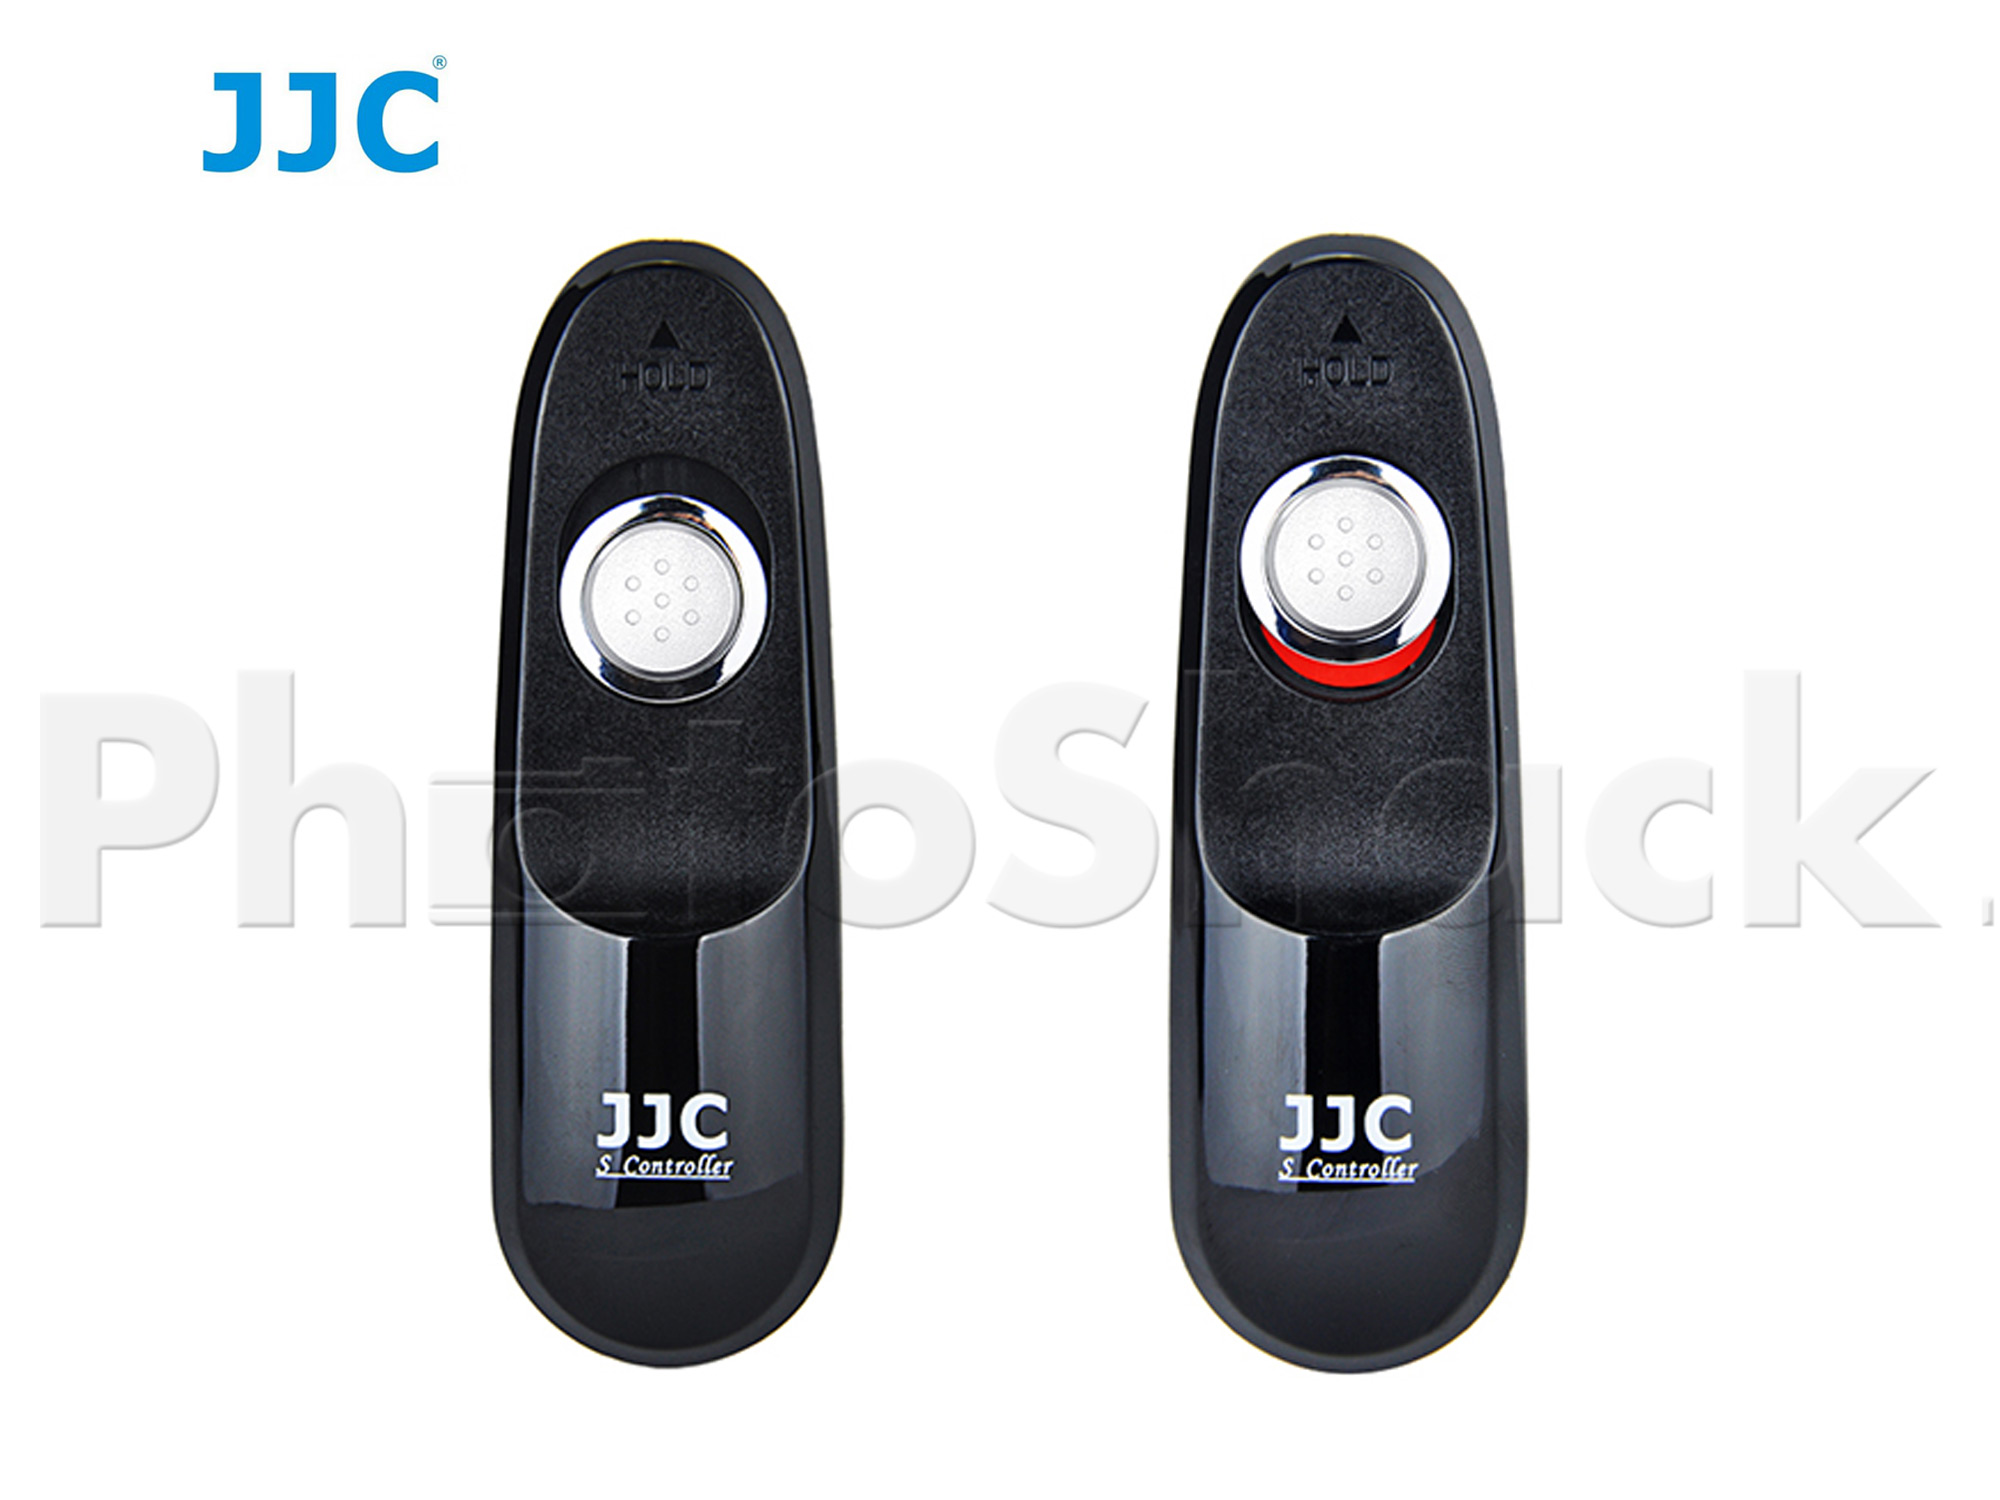 JJC S Series Shutter Remote for Sony, Olympus, Nikon, Fuji, Panasonic, Leica